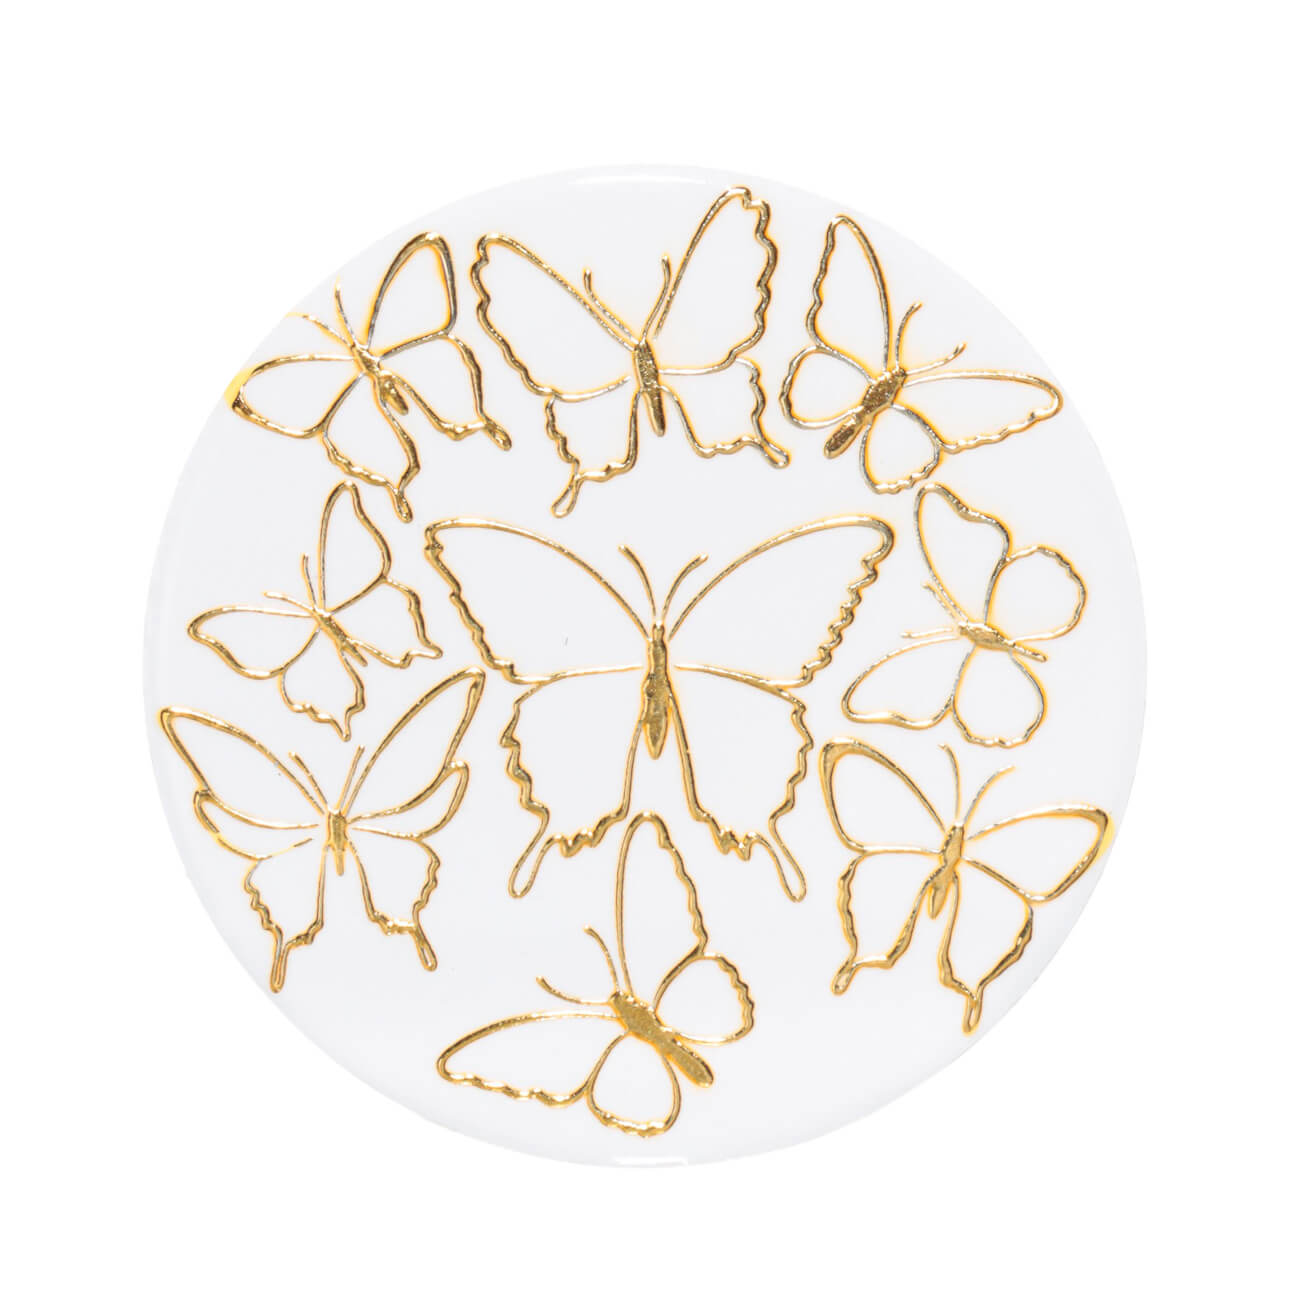 Подставка под кружку, 11 см, керамика/пробка, круглая, белая, Золотистые бабочки, Butterfly подставка glasar бабочки золотистая 33х33х75 см